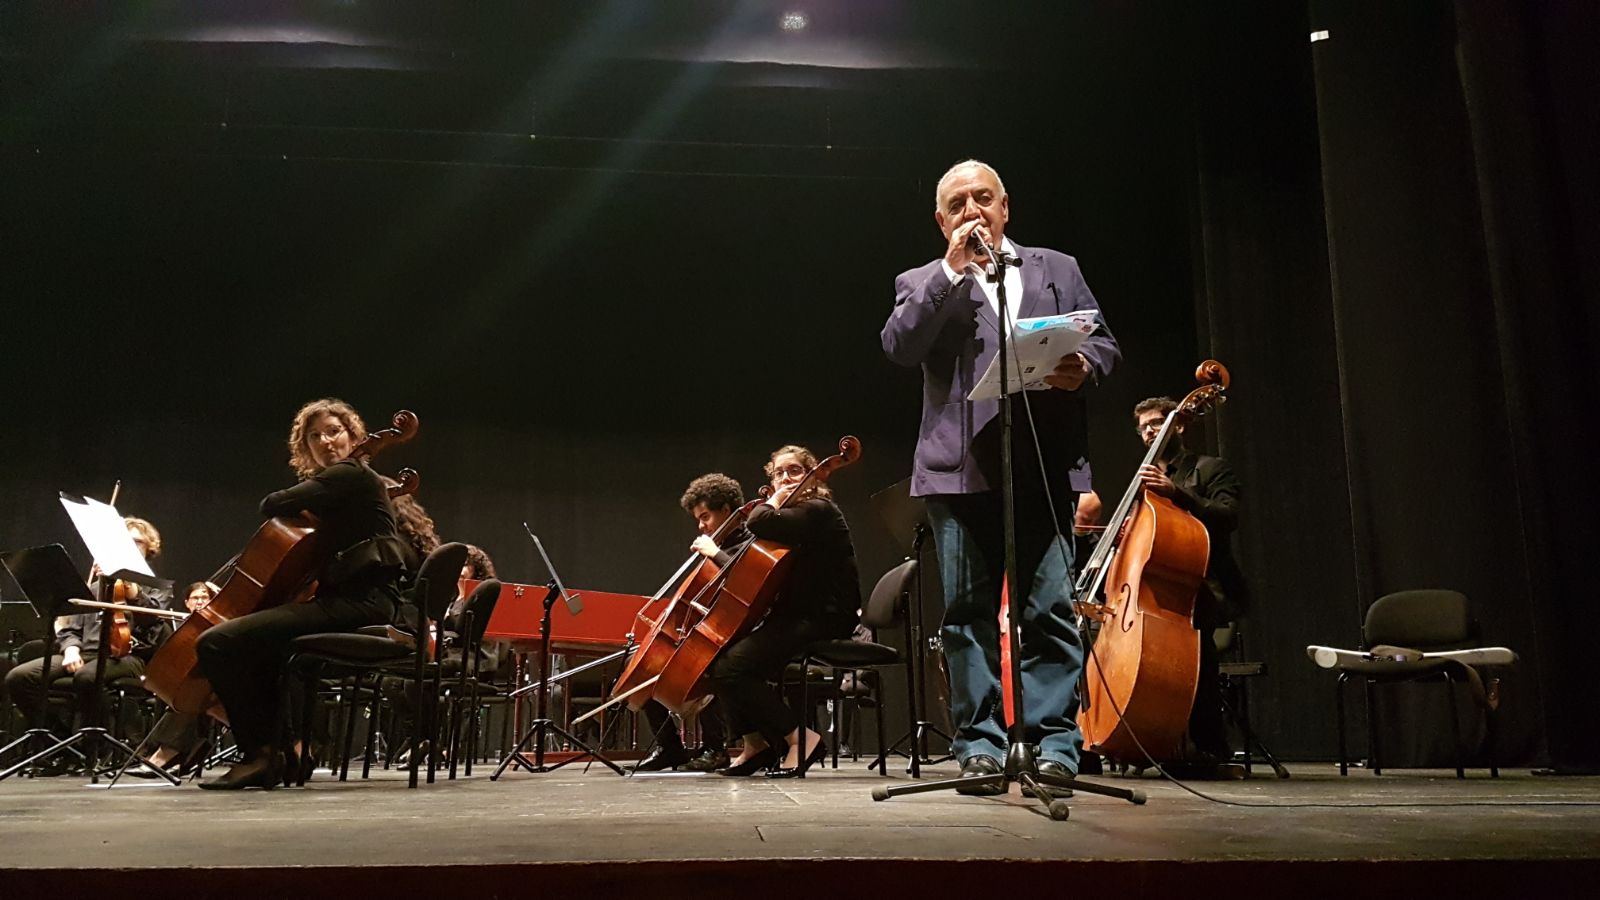 מוטי מלכא מציג את התזמורת הקאמרית תל אביב. קרדיט צילום: חנבו תקשורת